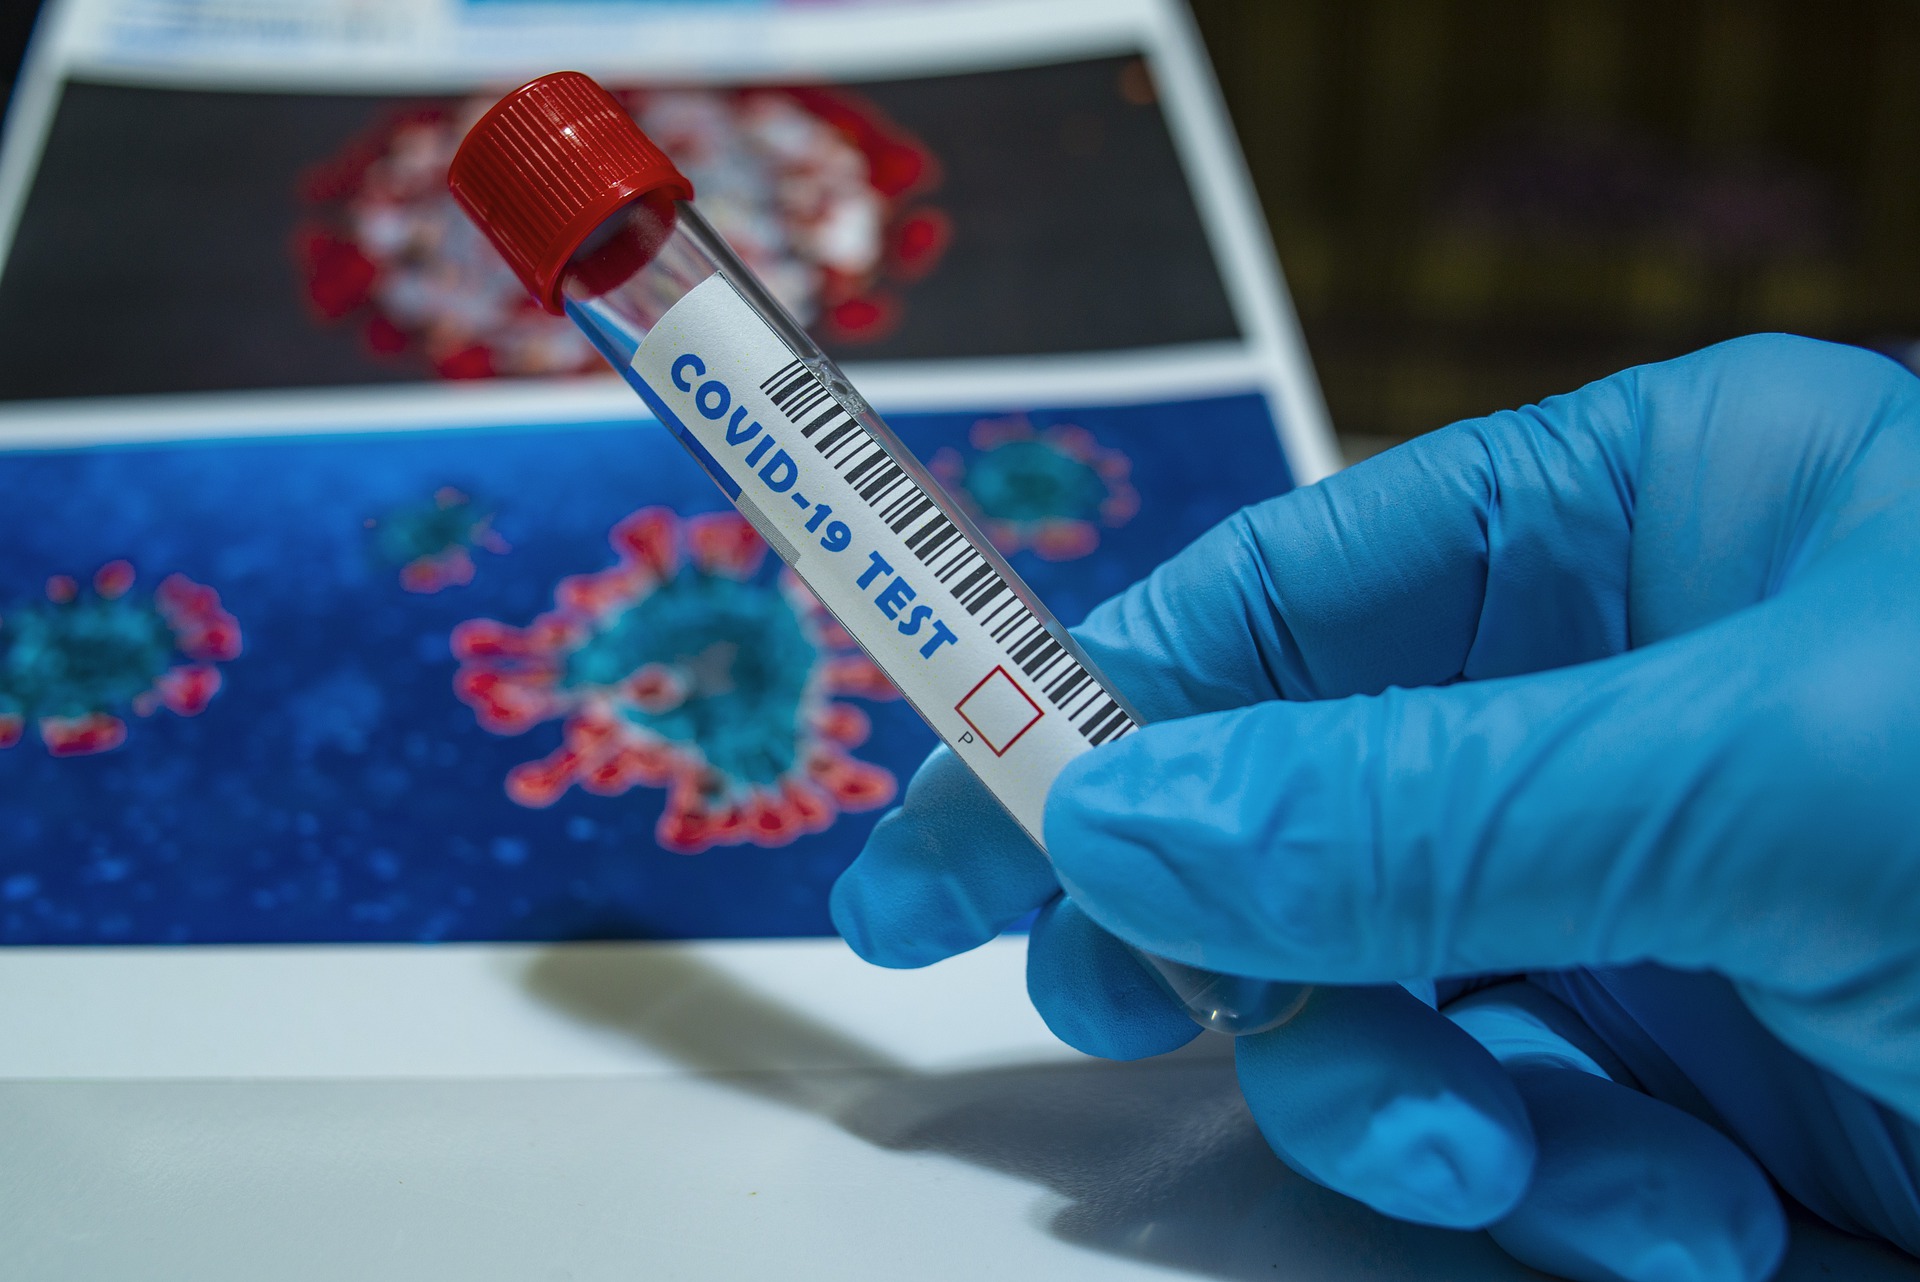 4233 теста на коронавирус провели в Смоленской области за сутки